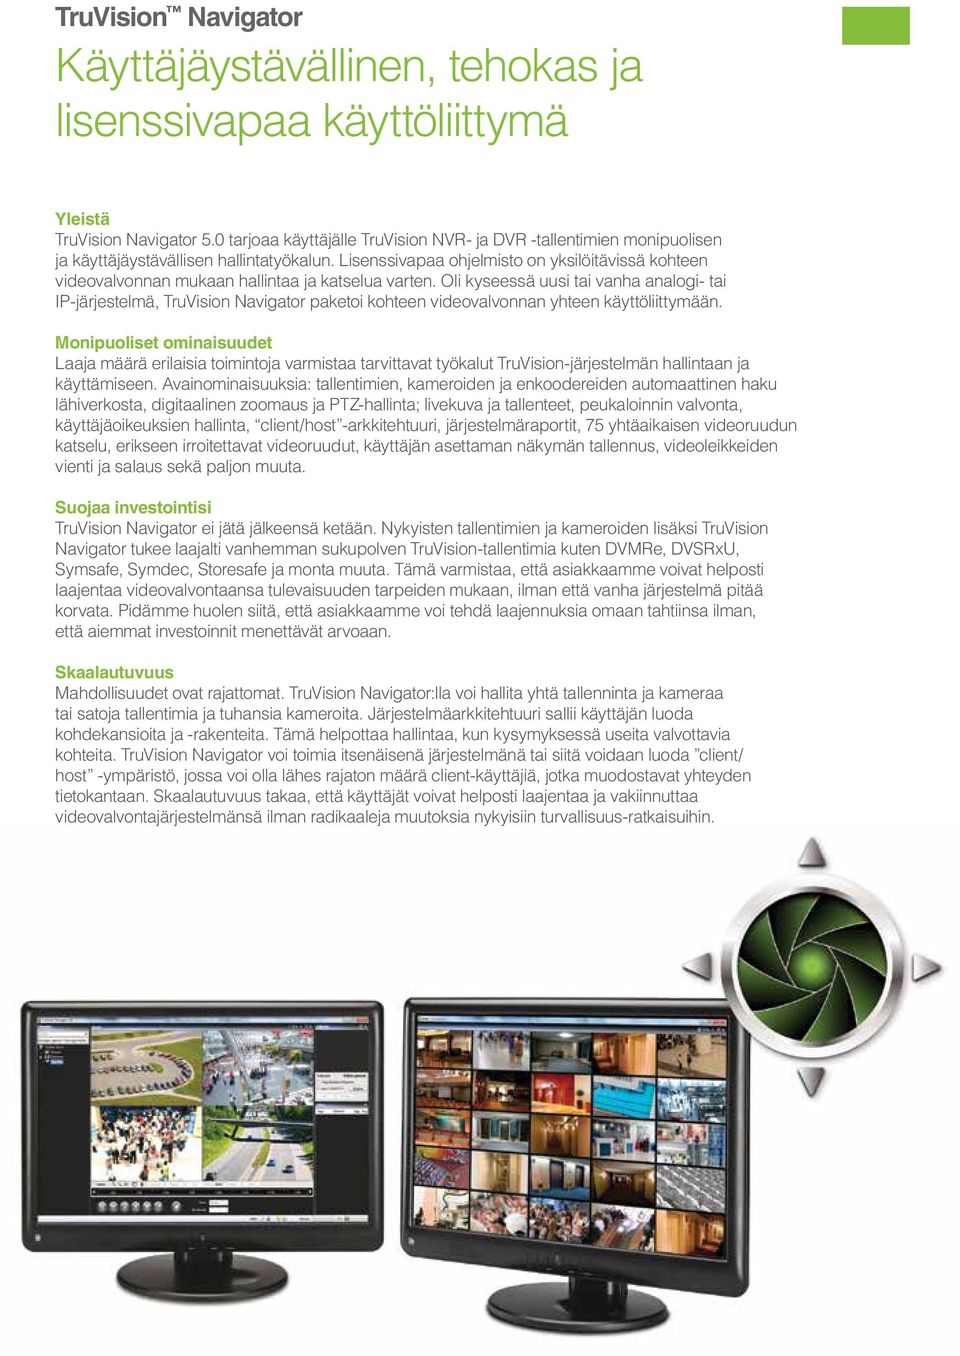 Lisenssivapaa ohjelmisto on yksilöitävissä kohteen videovalvonnan mukaan hallintaa ja katselua varten.